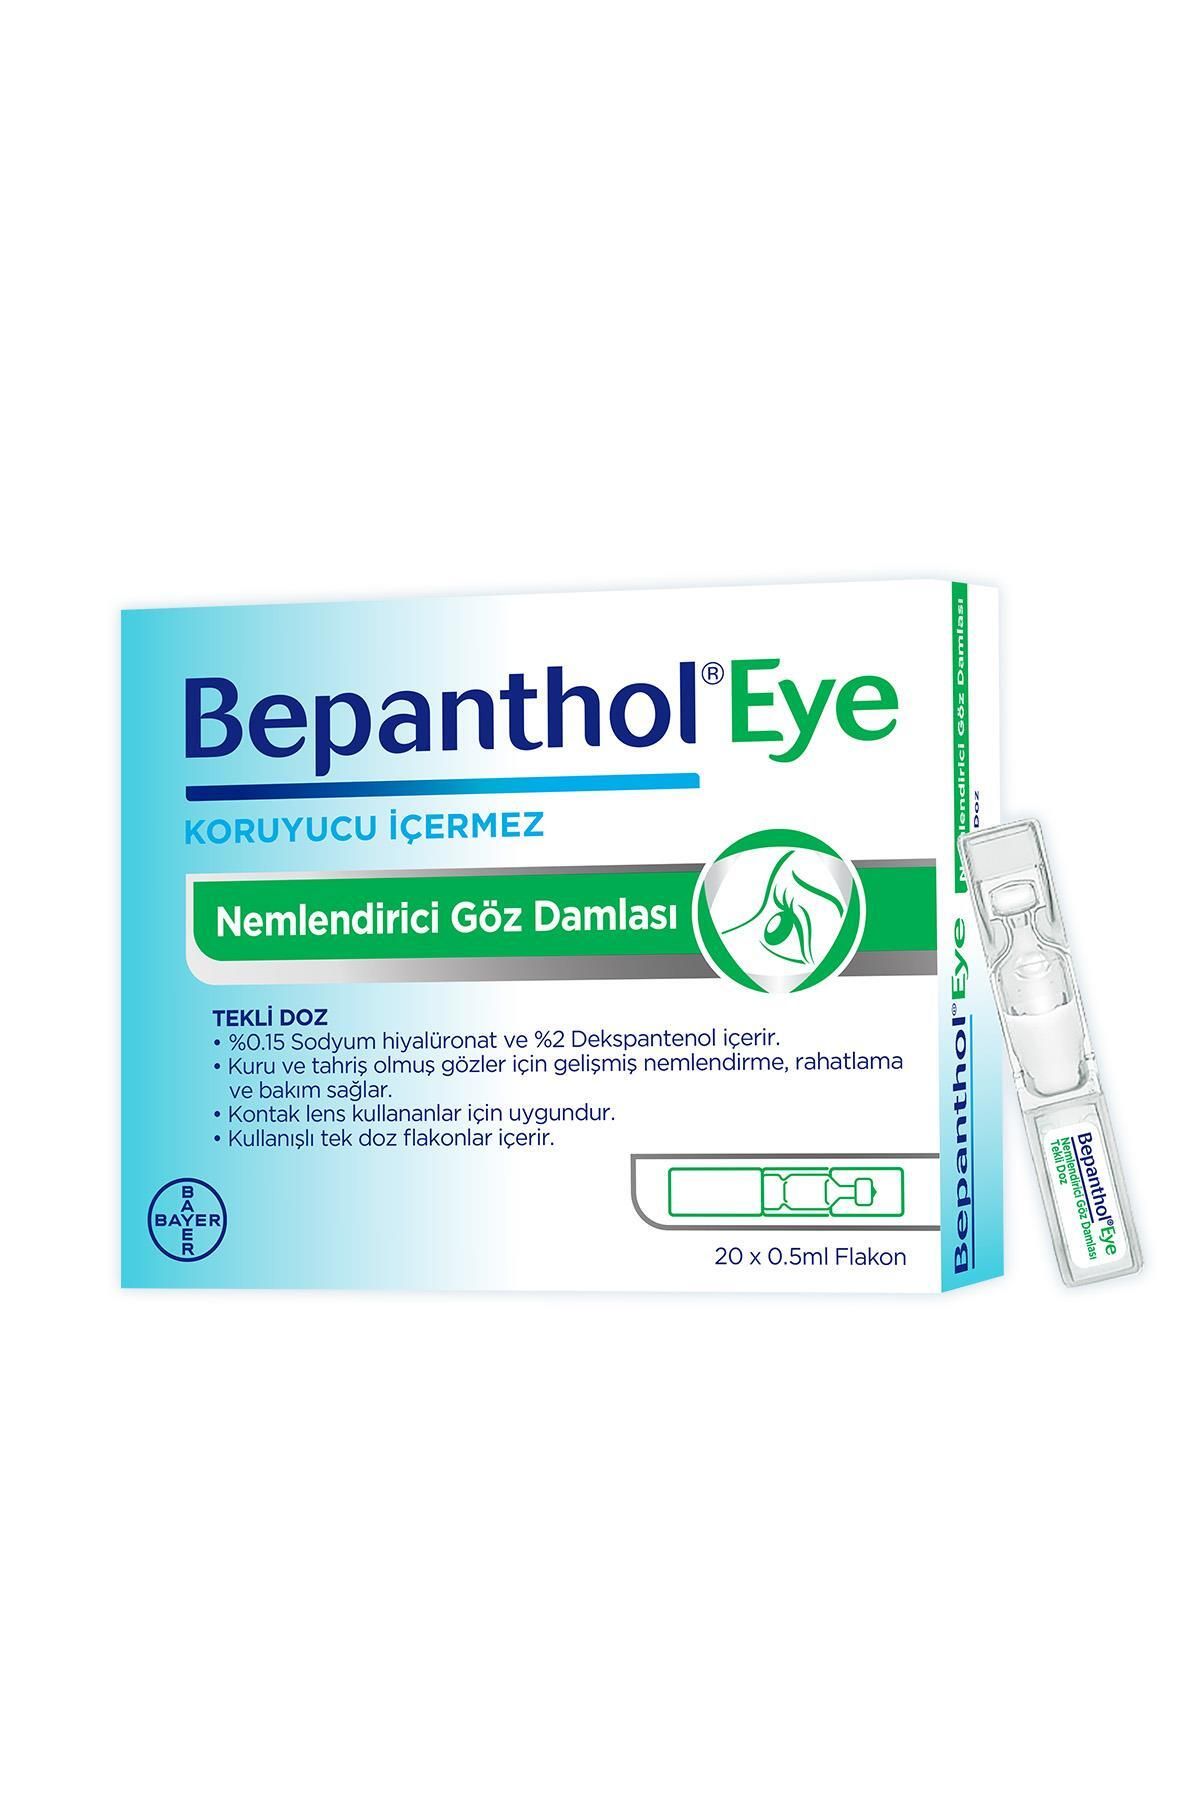 Bepanthol Eye Nemlendirici Göz Damlası Tekli Doz 20x0.5ml